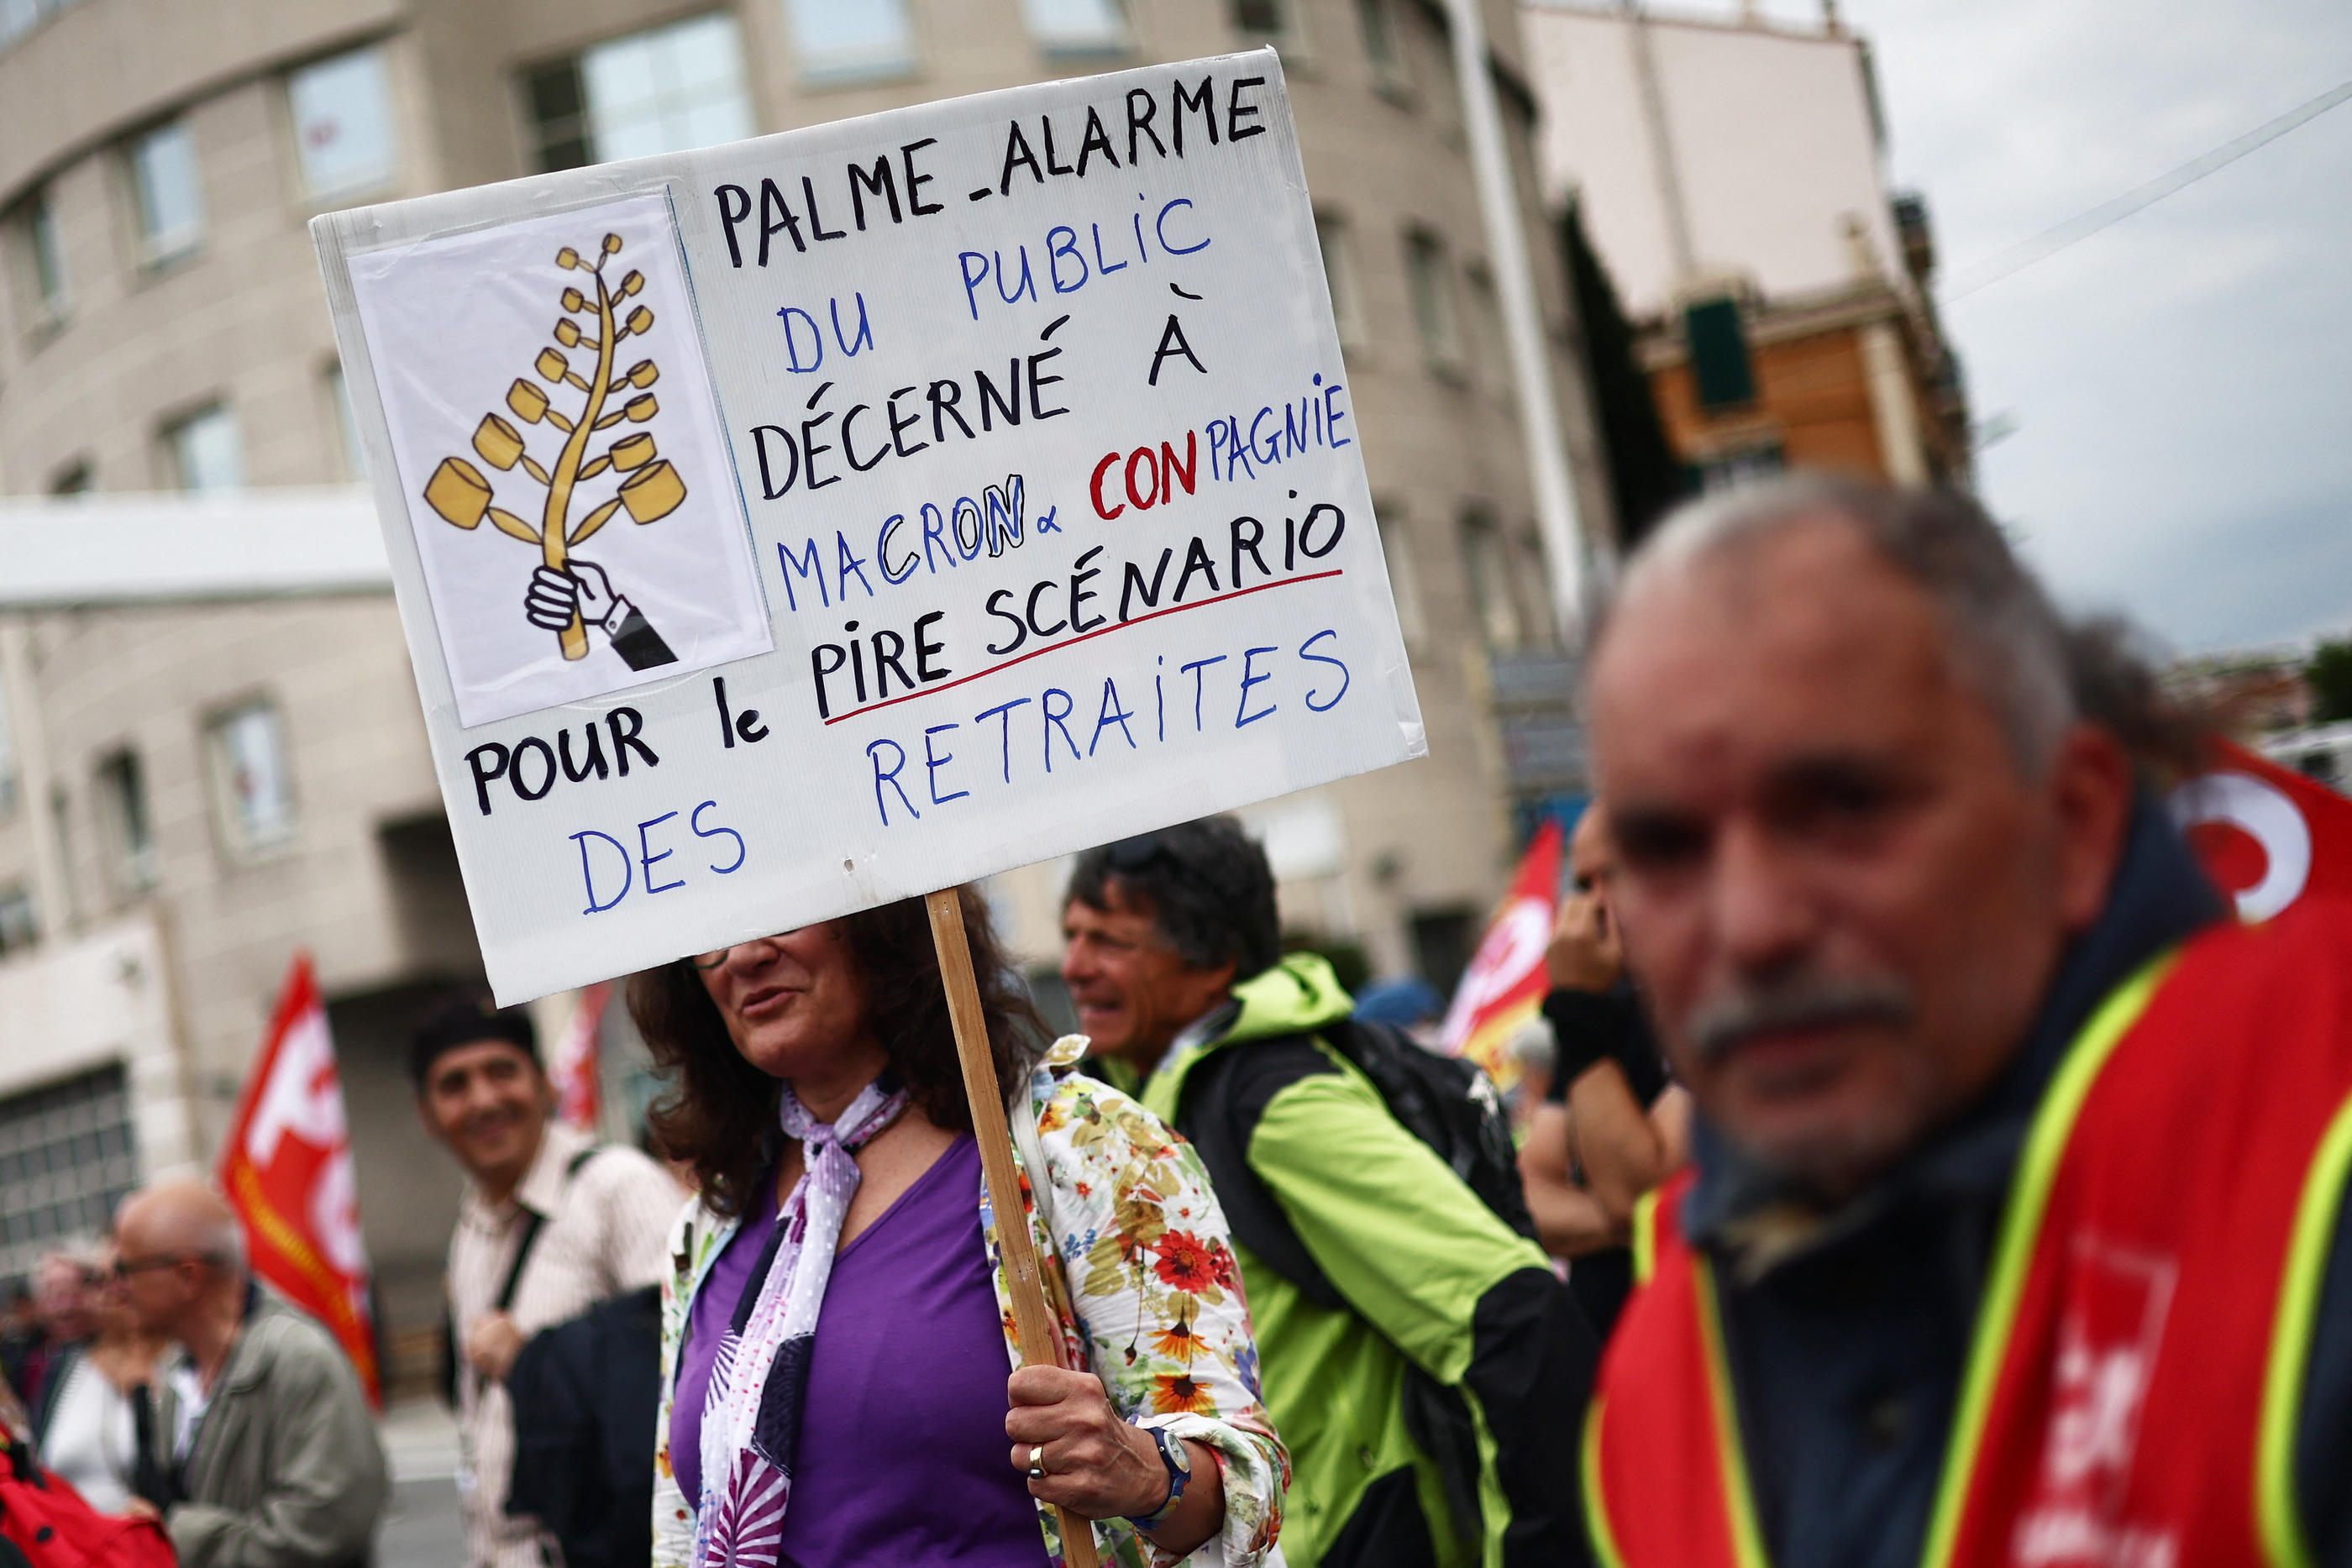 Plusieurs militants ont manifesté à Cannes, notamment en dehors du périmètre d'interdiction imposé par la préfecture. (Illustration) REUTERS/Yara Nardi